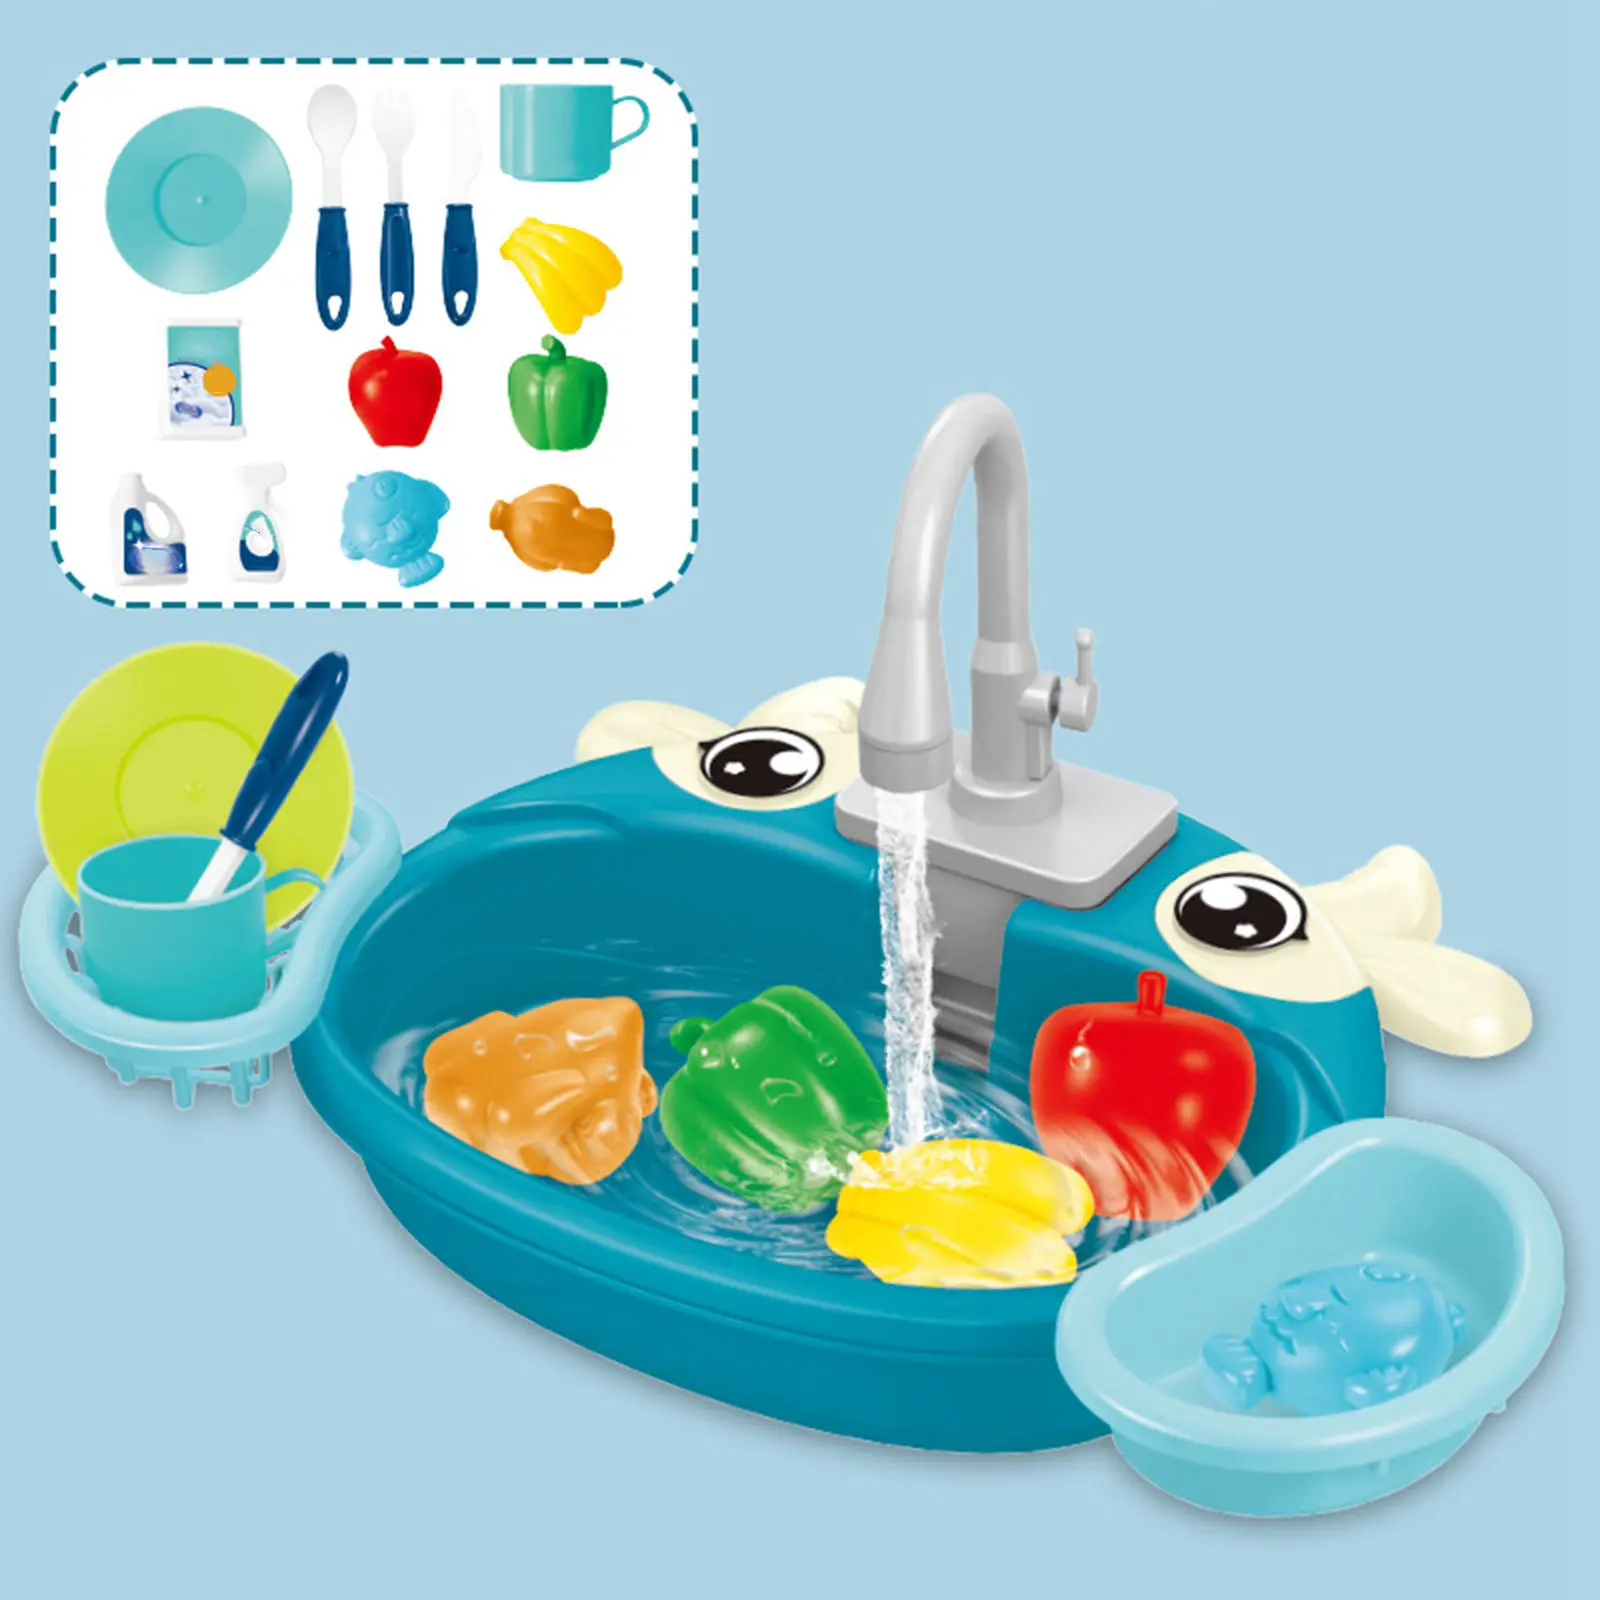 Fregadero juguetes jugar platos con agua corriente Play Set para Cocina Niños 